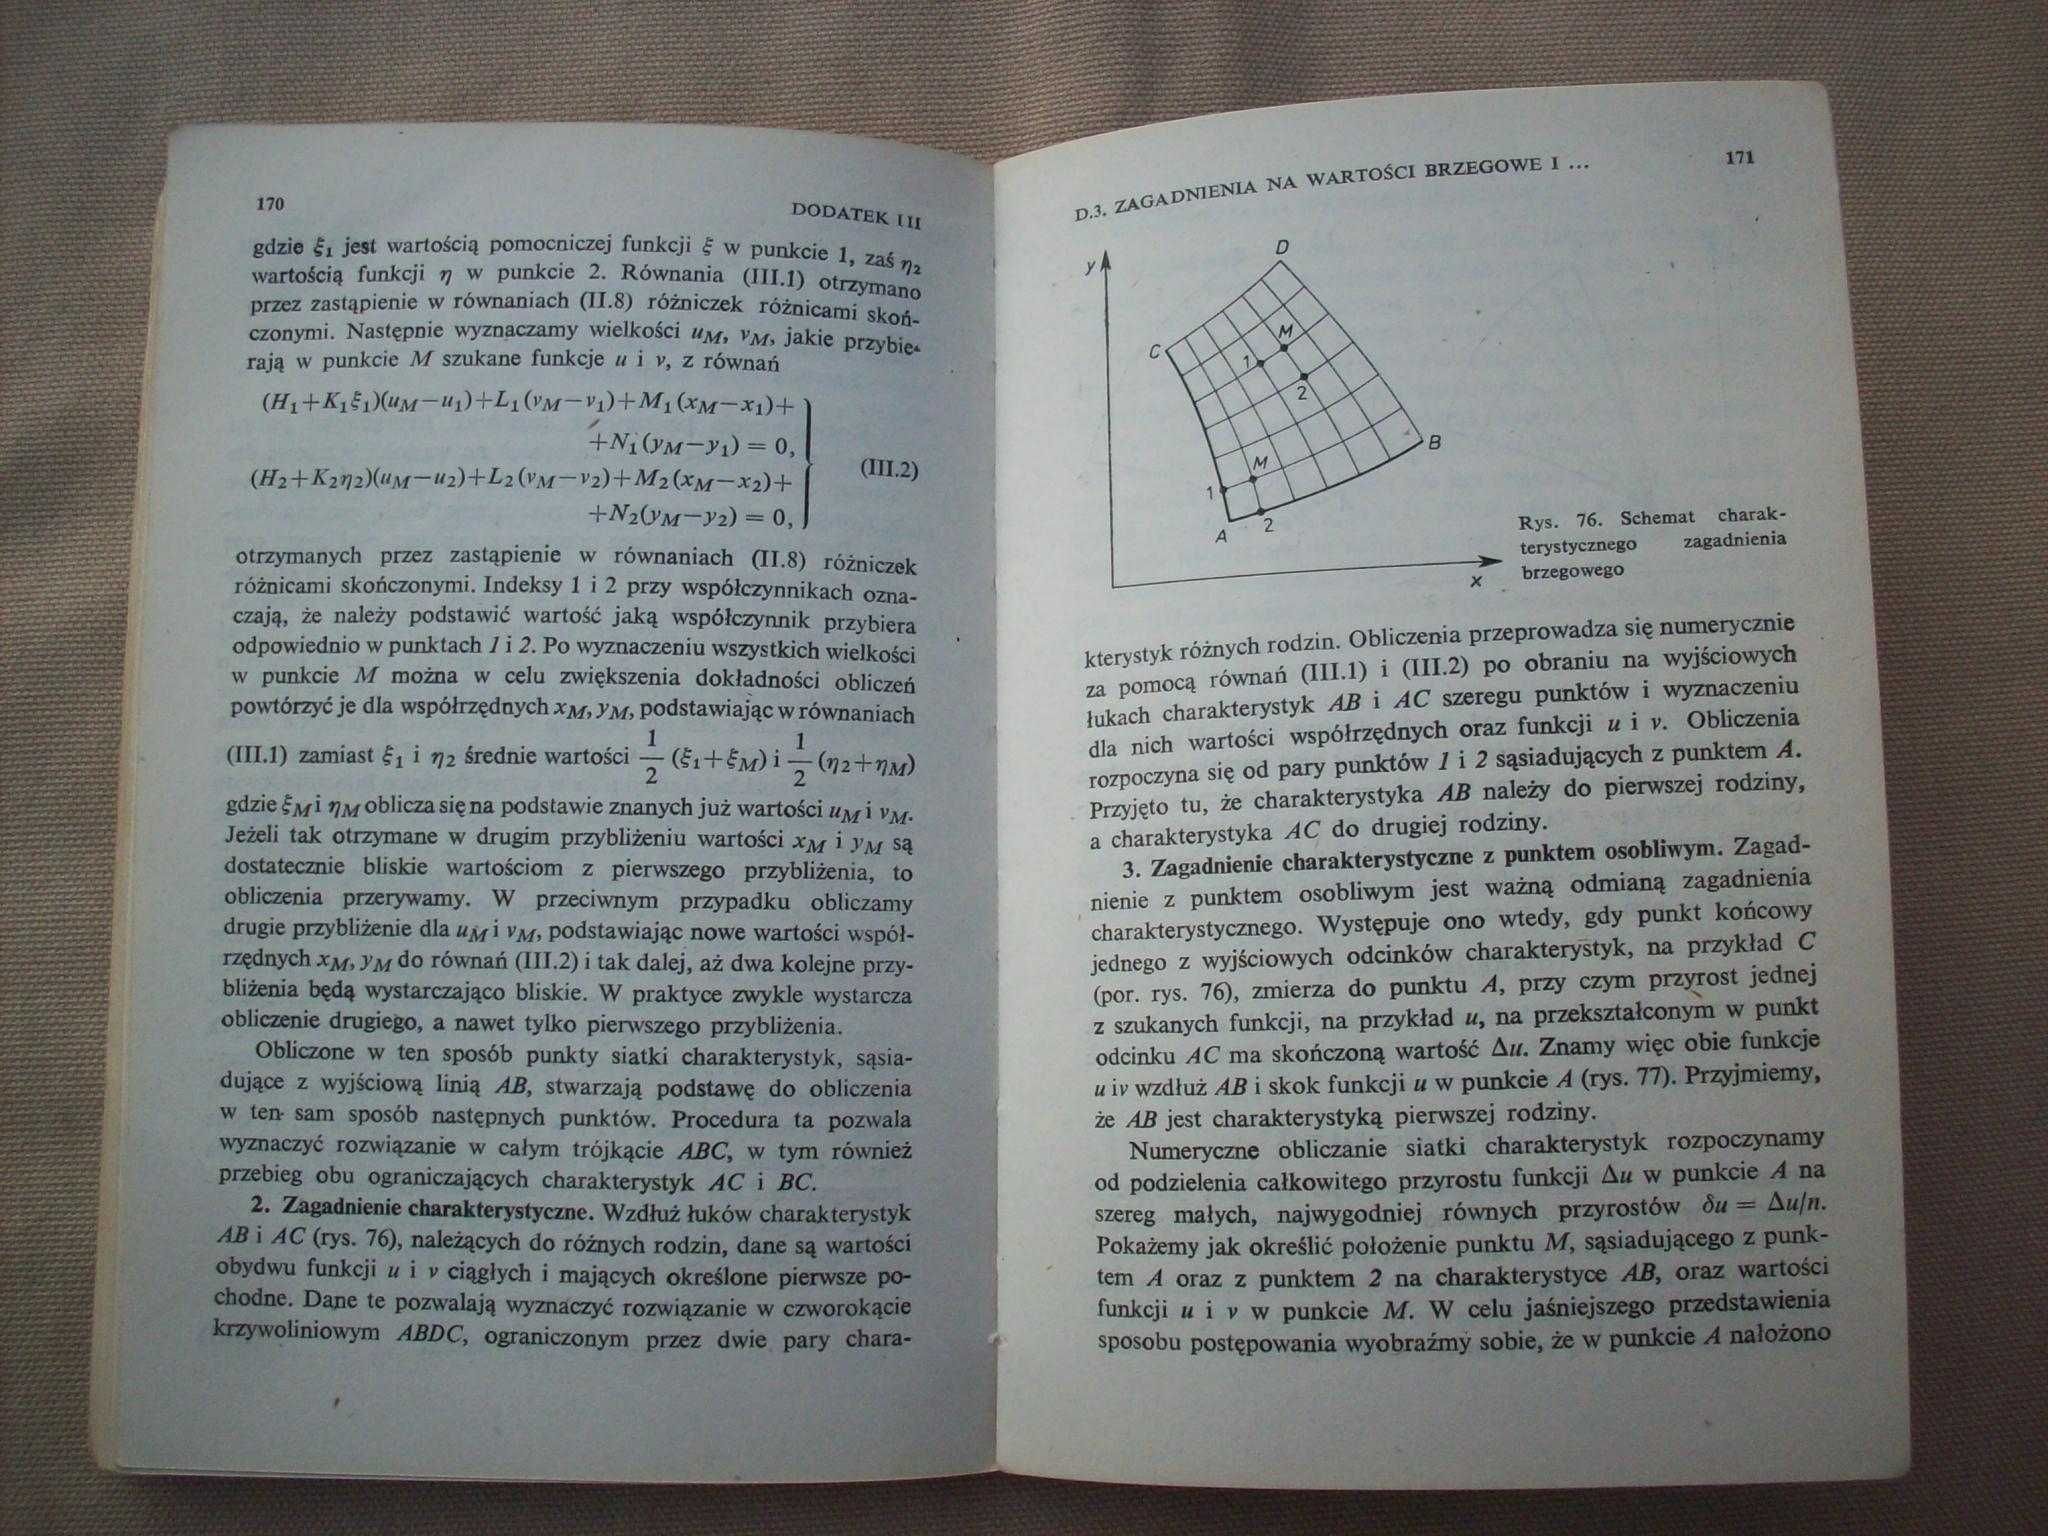 Mechanika plastycznego płynięcia, W.Szczypiński, 1978.